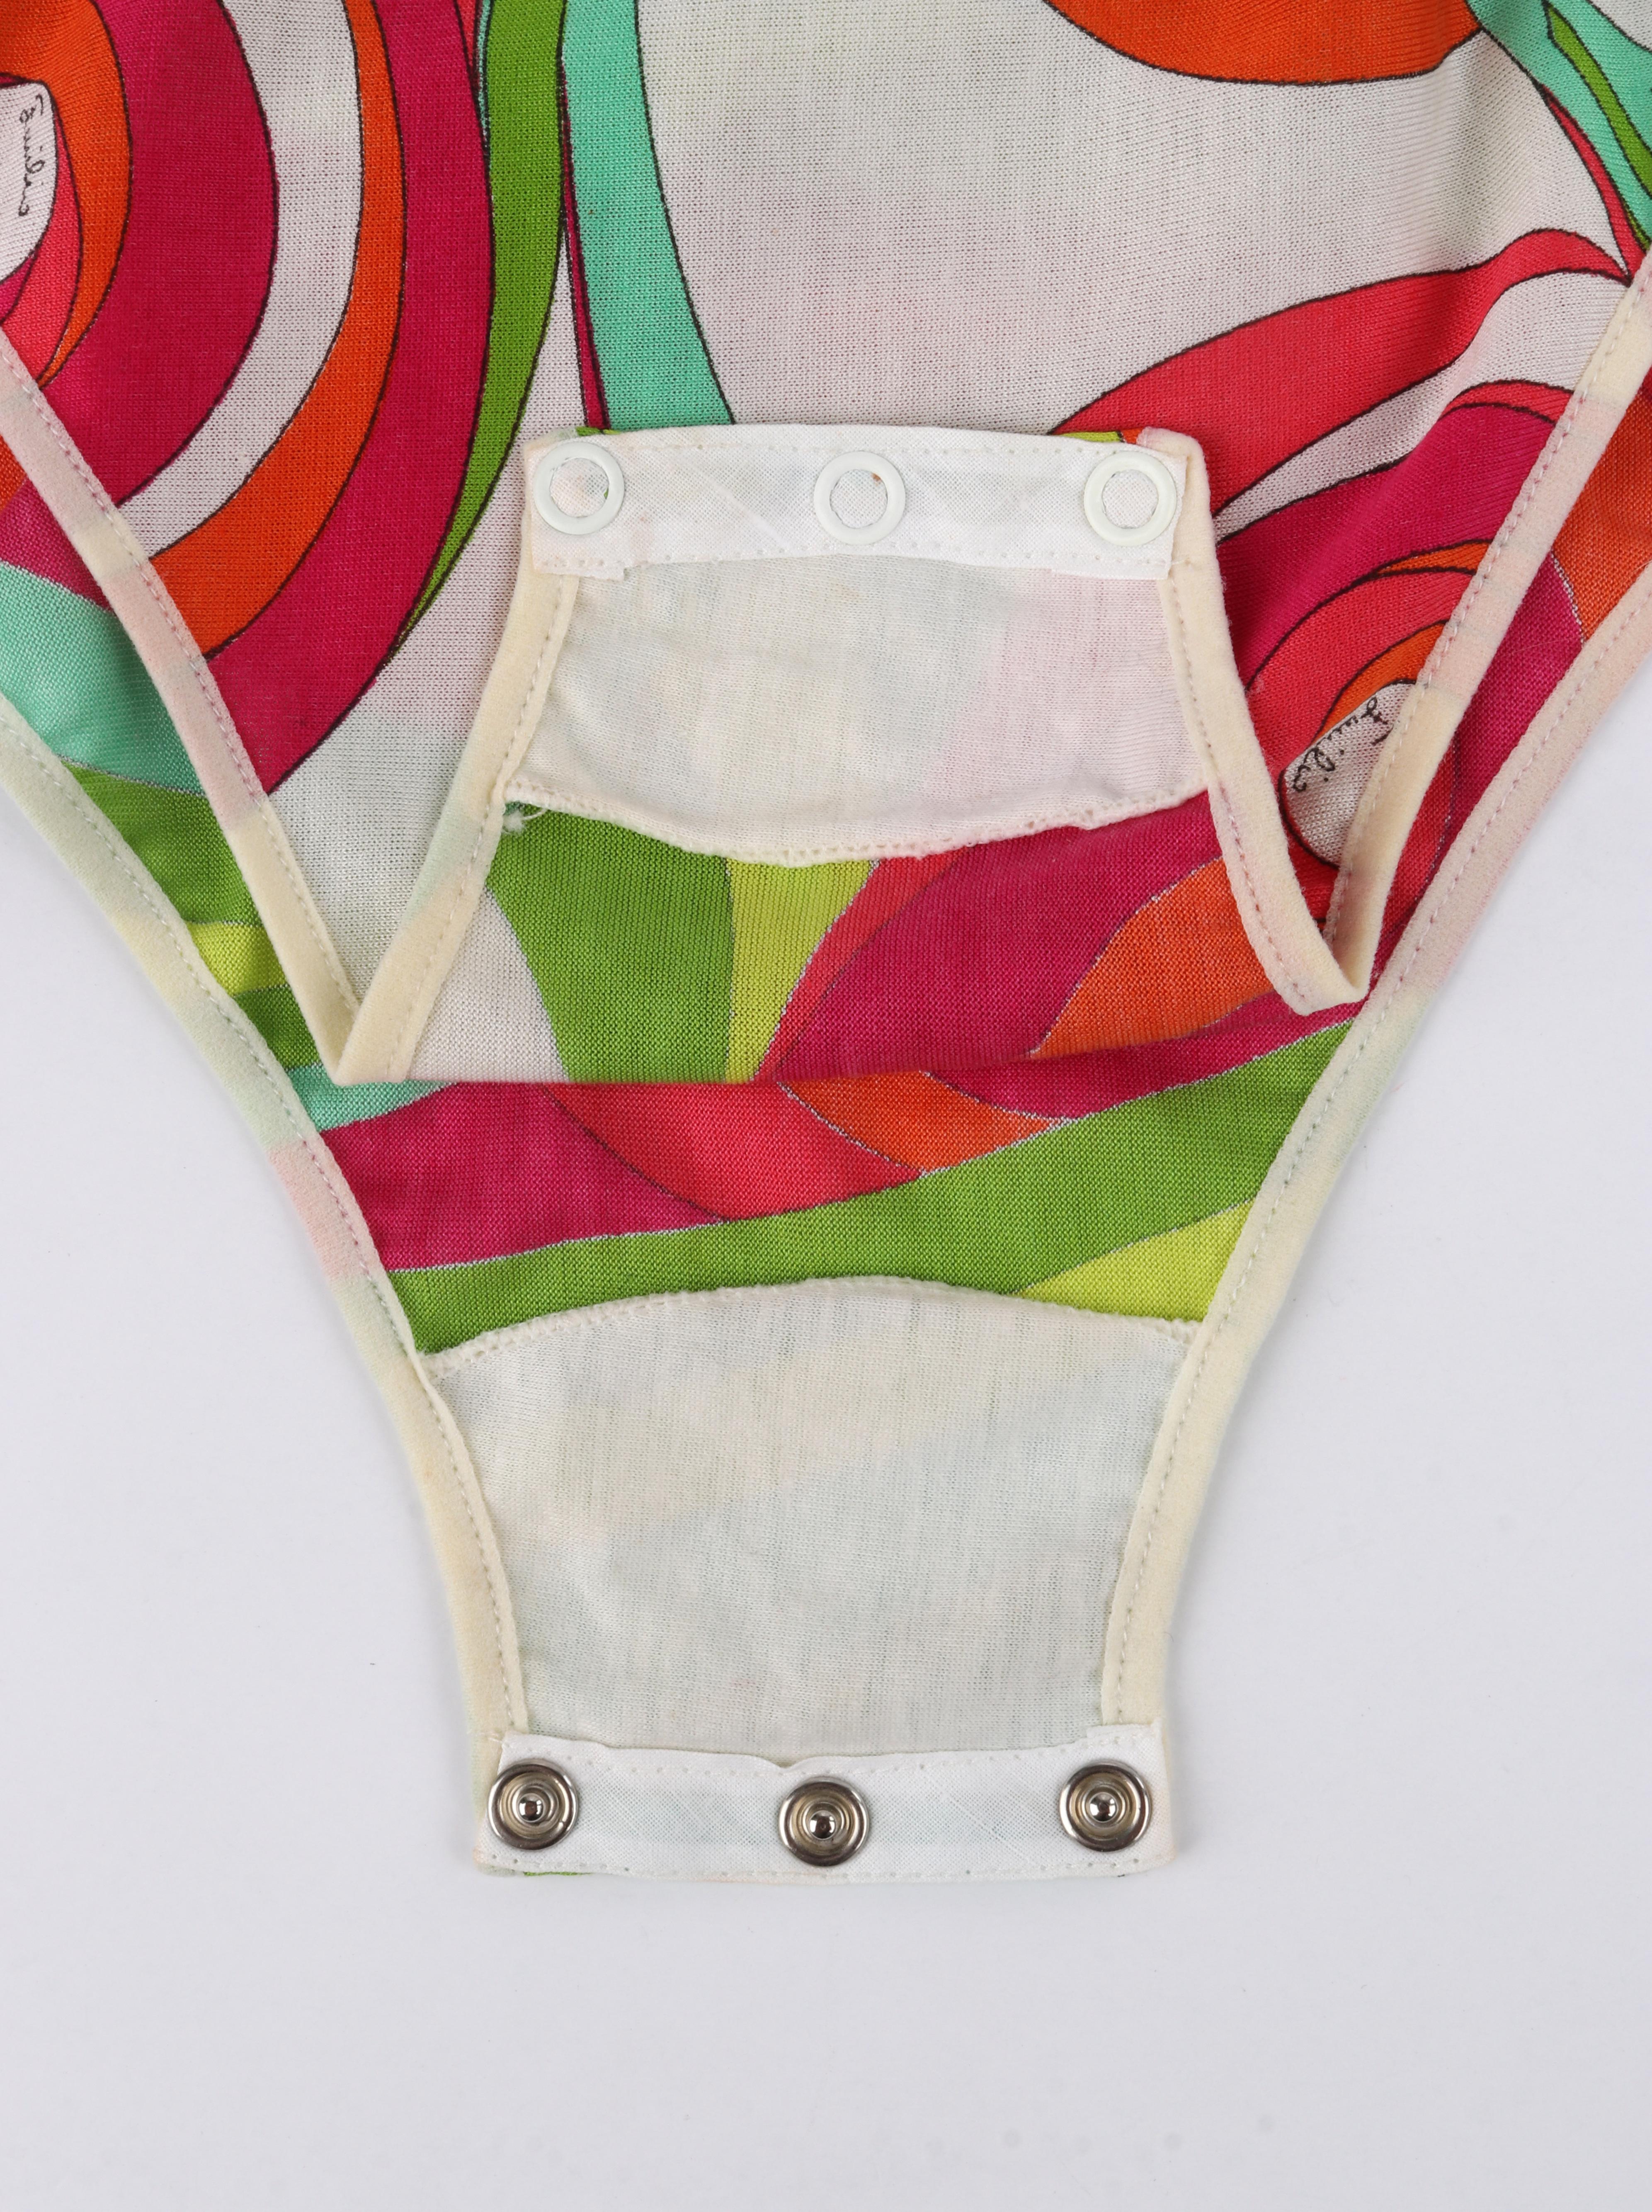 EMILIO PUCCI, combinaison de bain une pièce Op Art multicolore, années 1970 en vente 3